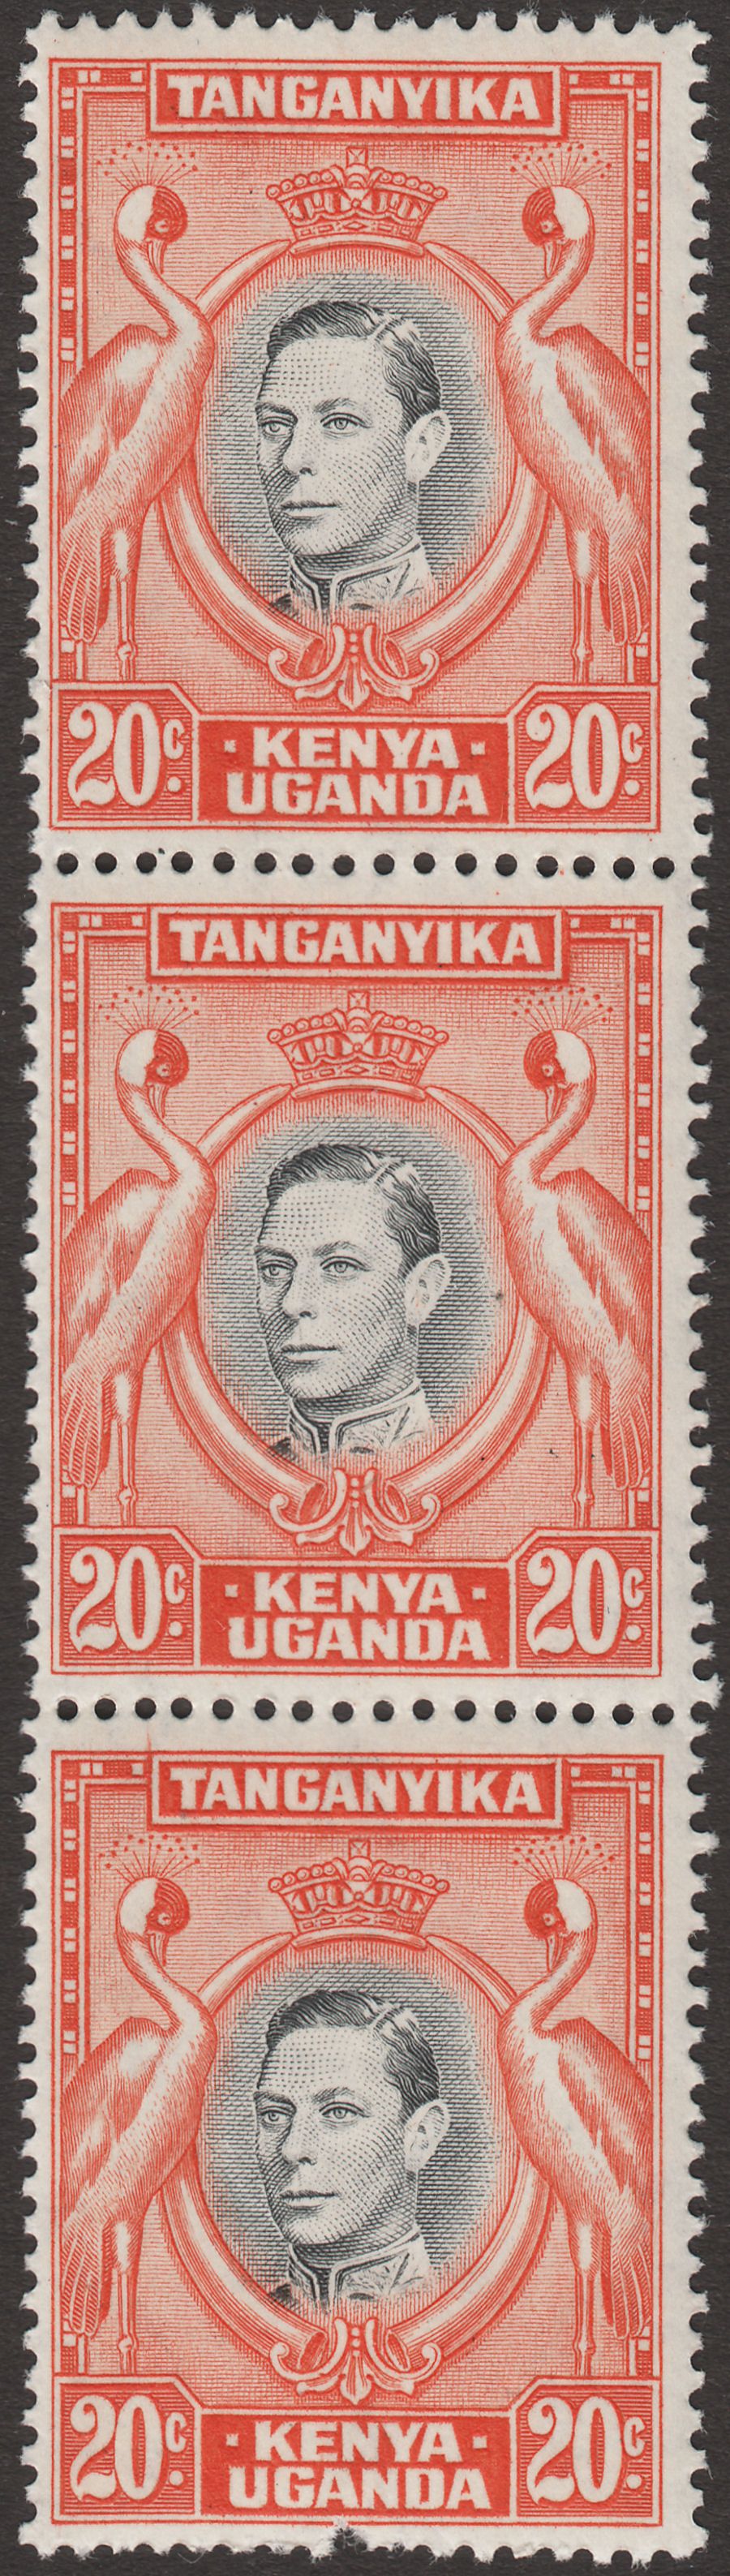 Kenya Uganda Tanganyika 1942 KGVI 20c Black and Orange Strip of 3 Mint SG139b